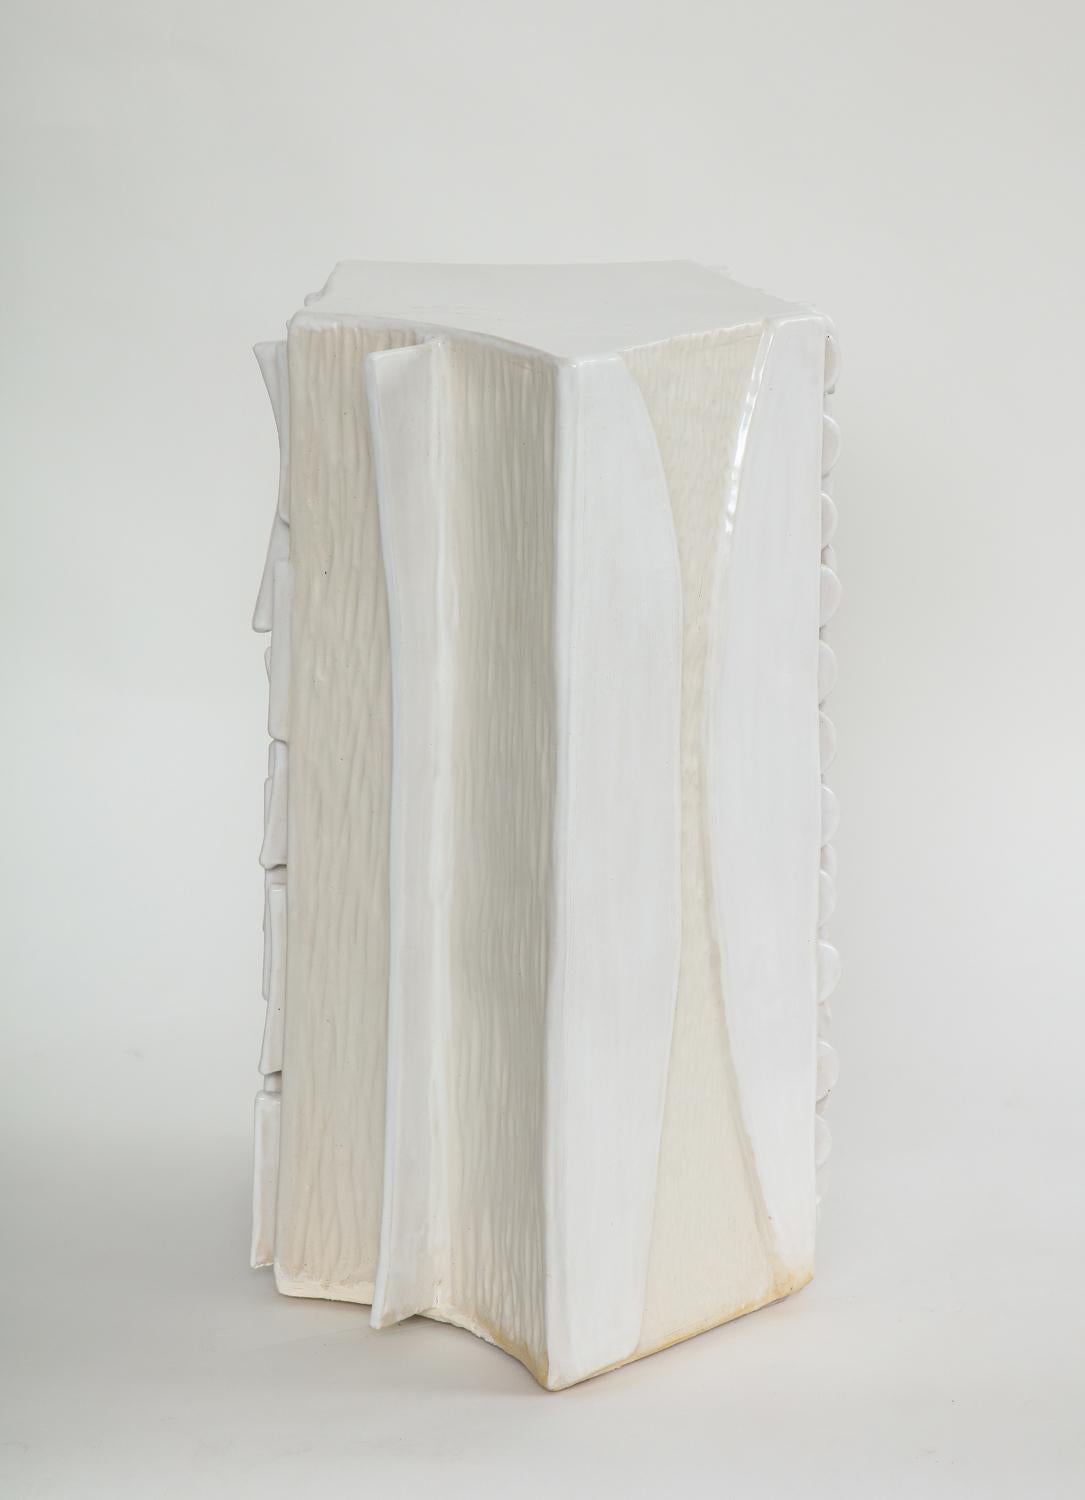 Trish DeMasi
Moderno white, 2020
Glazed ceramic
Measures: 21 x 15.5 x 12.5 in.